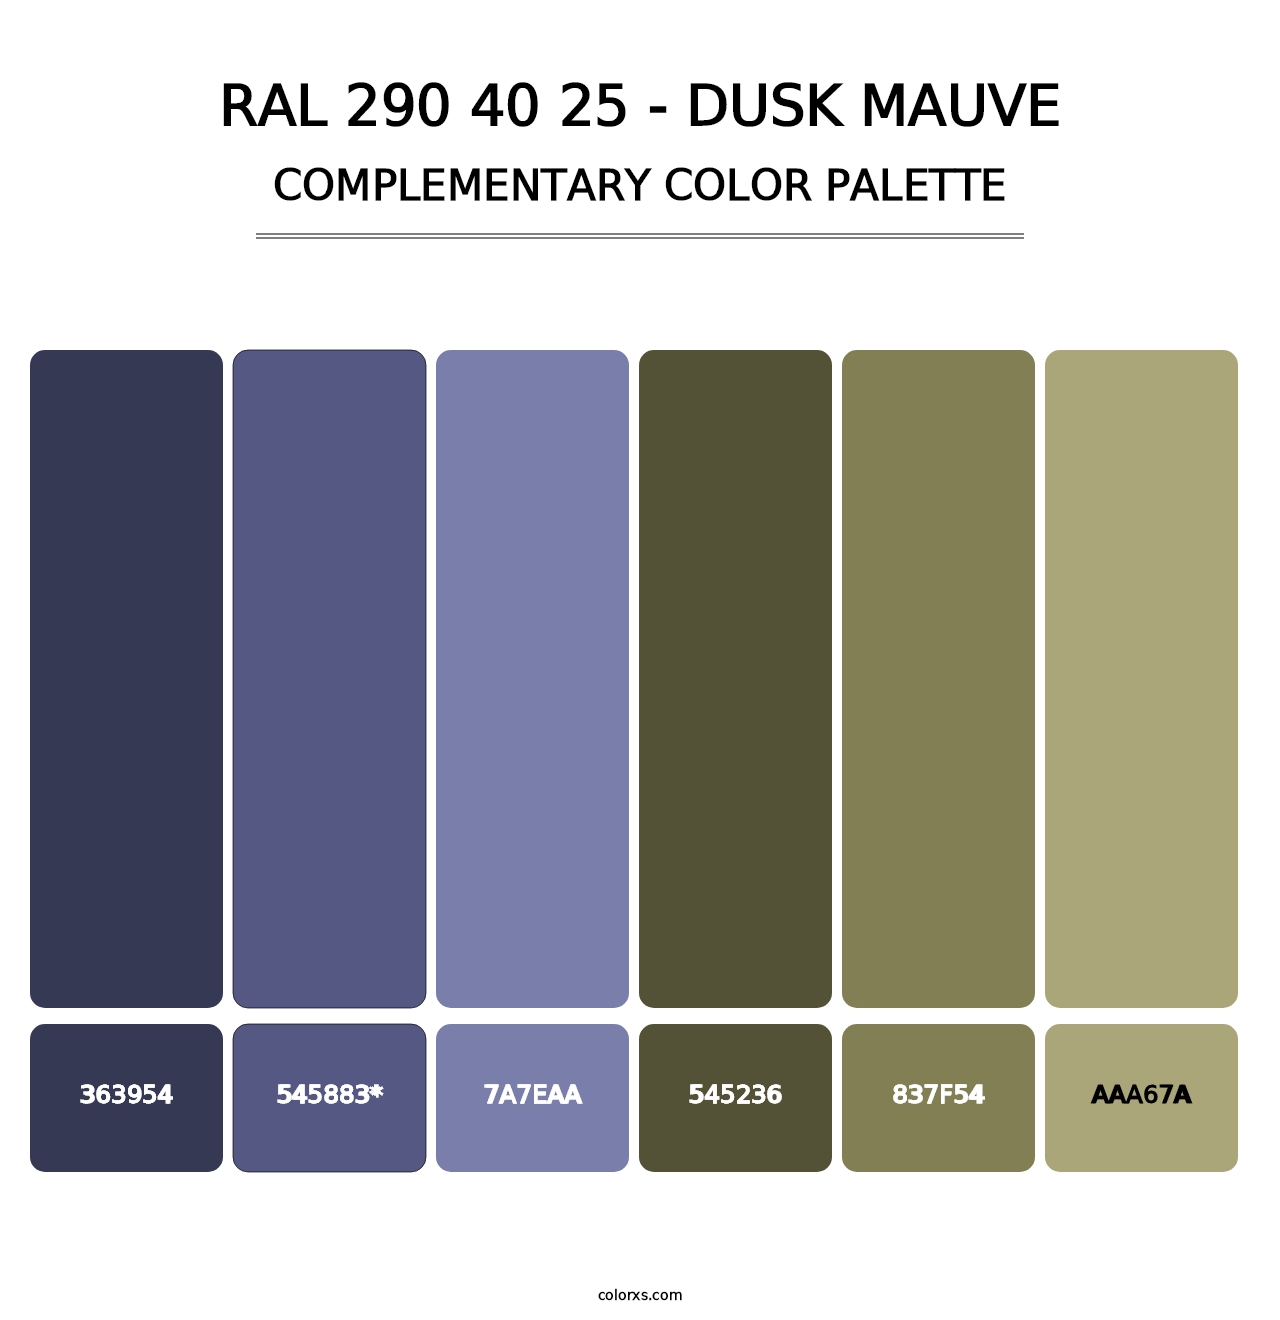 RAL 290 40 25 - Dusk Mauve - Complementary Color Palette